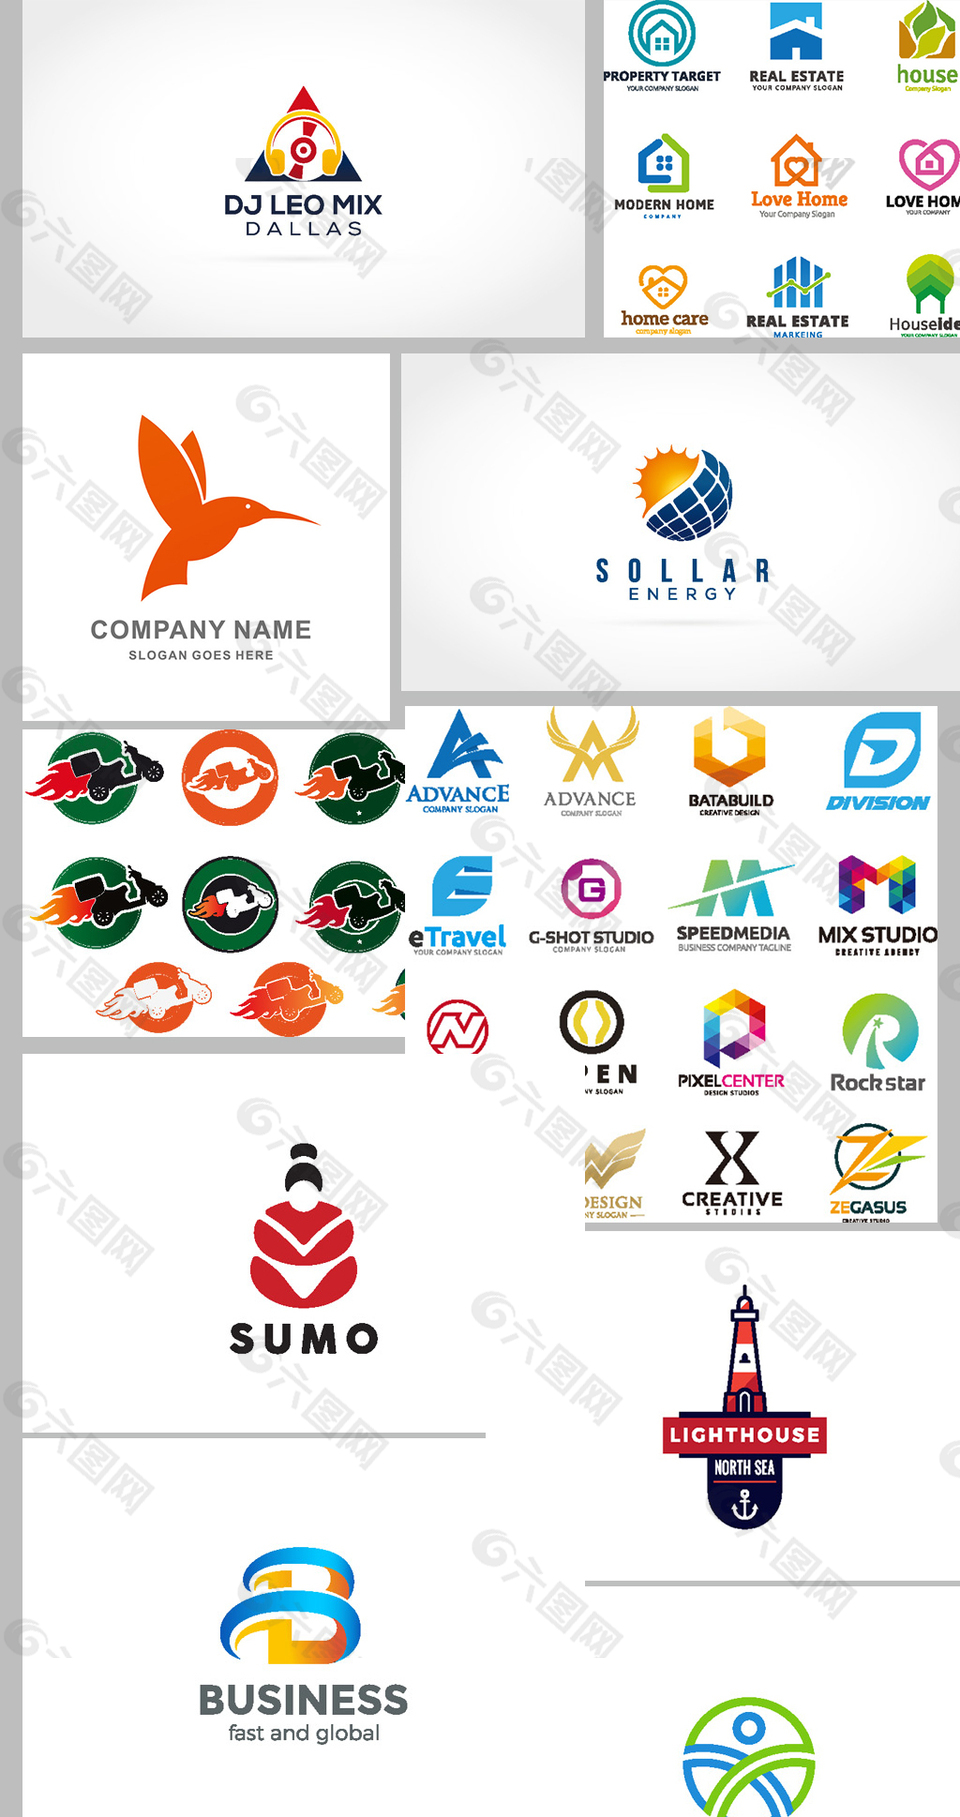 企业行业logo设计矢量素材平面广告素材免费下载(图片编号:7884808)